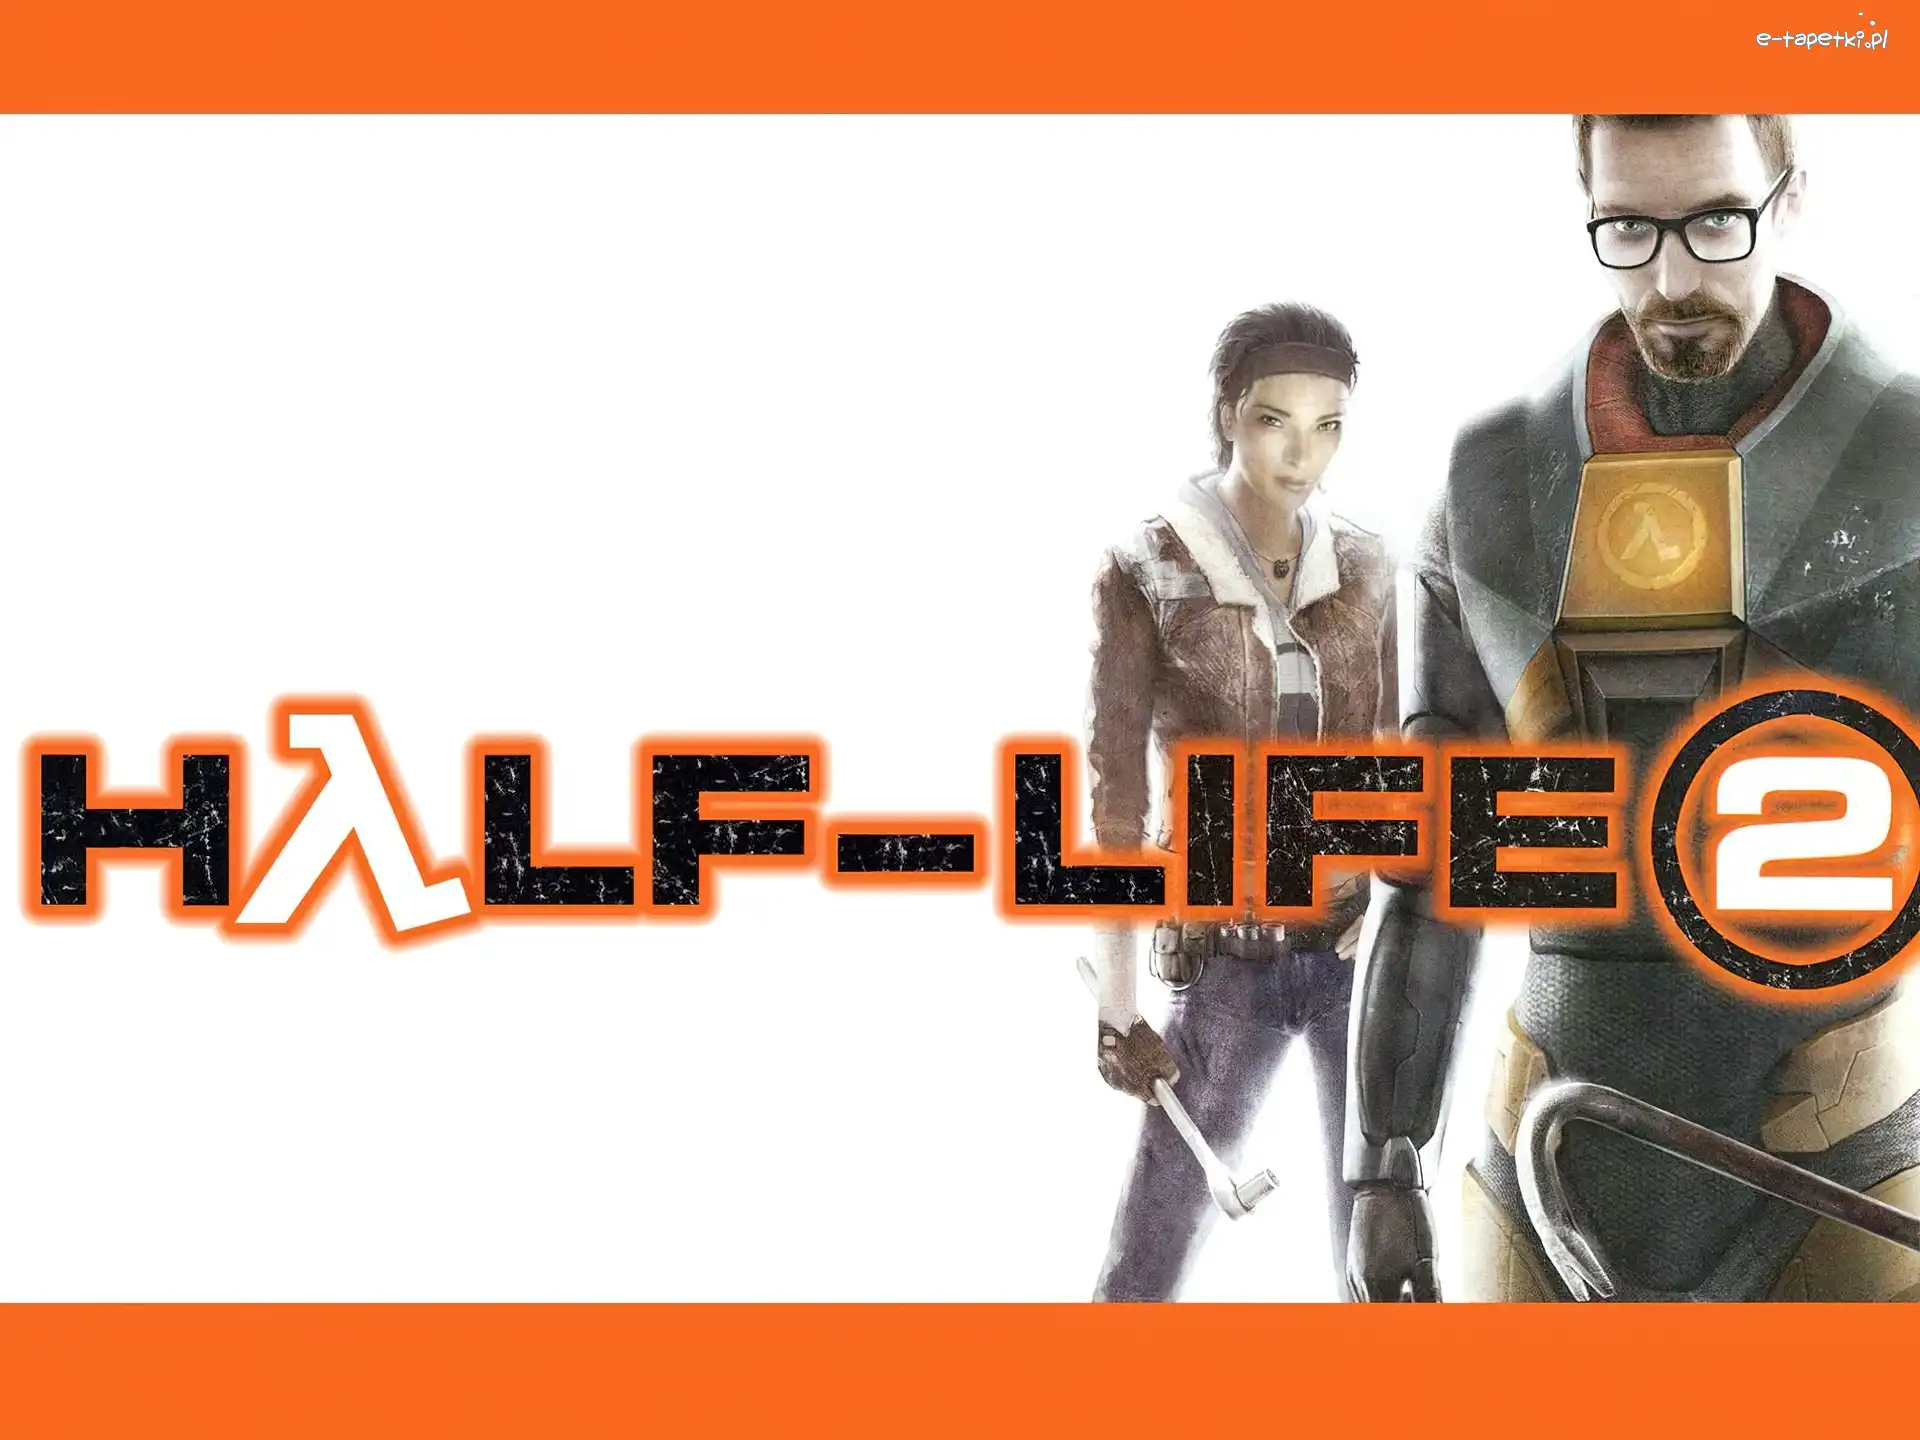 postacie, mężczyzna, kobieta, Half Life 2, logo